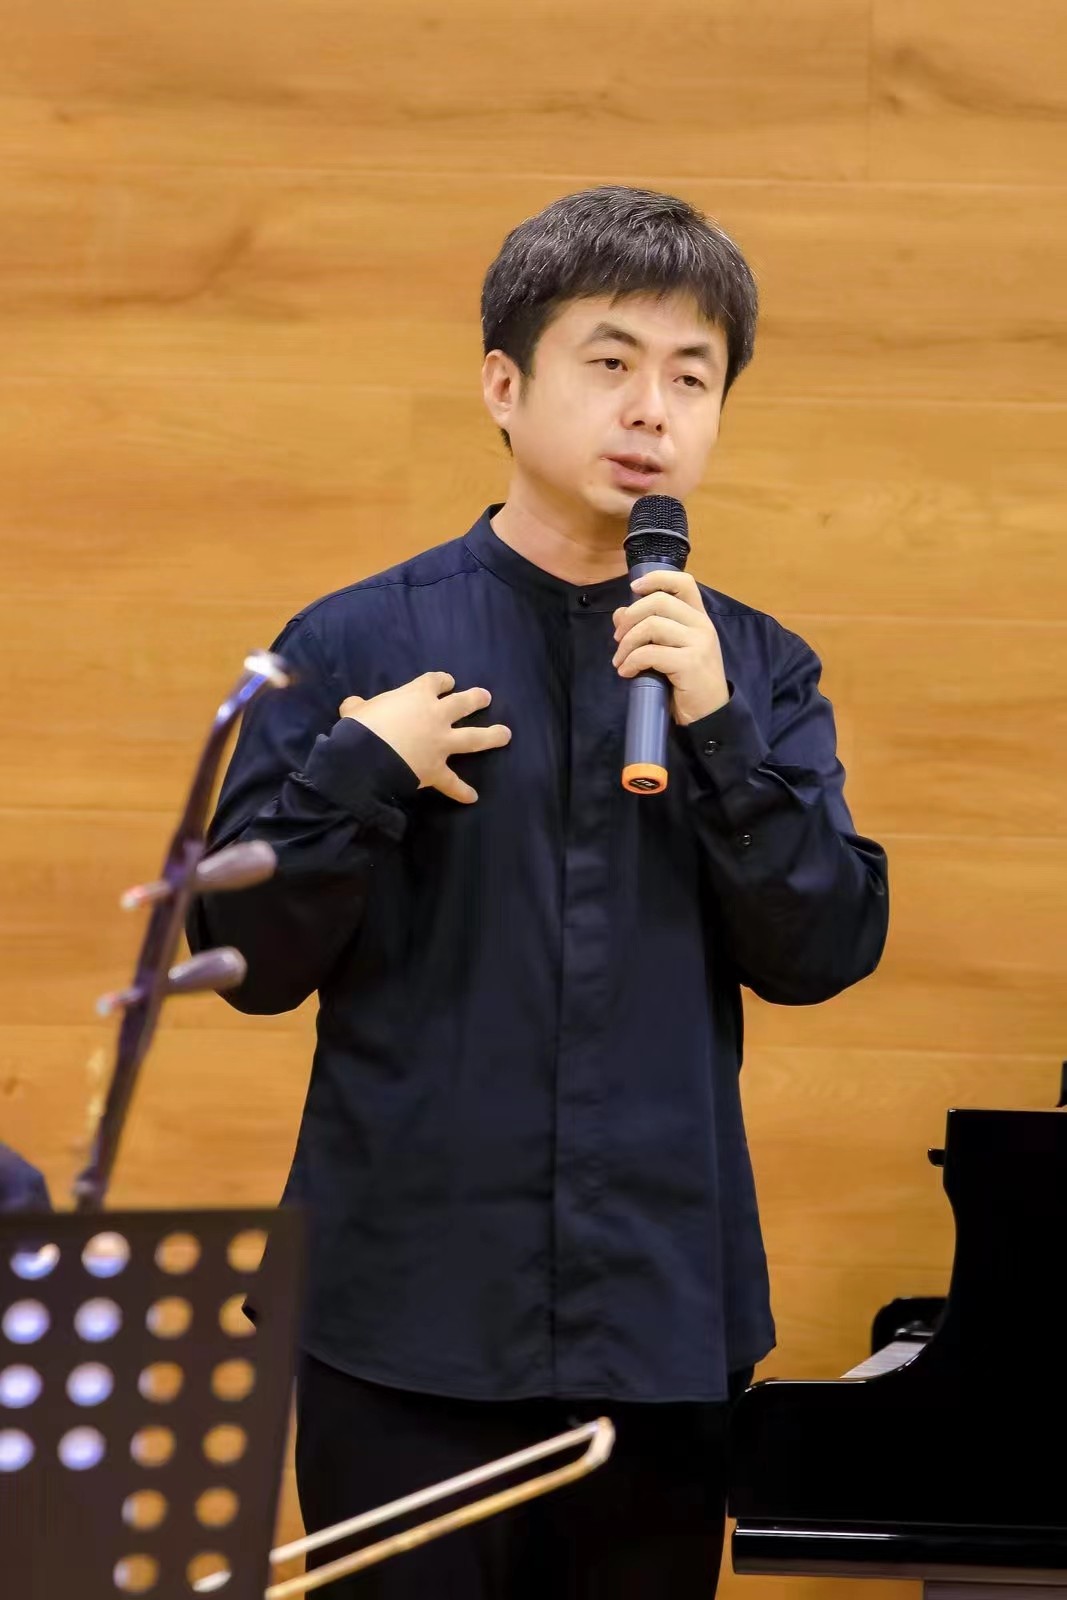 刘晓先生命美学专题文学音乐会在京举行